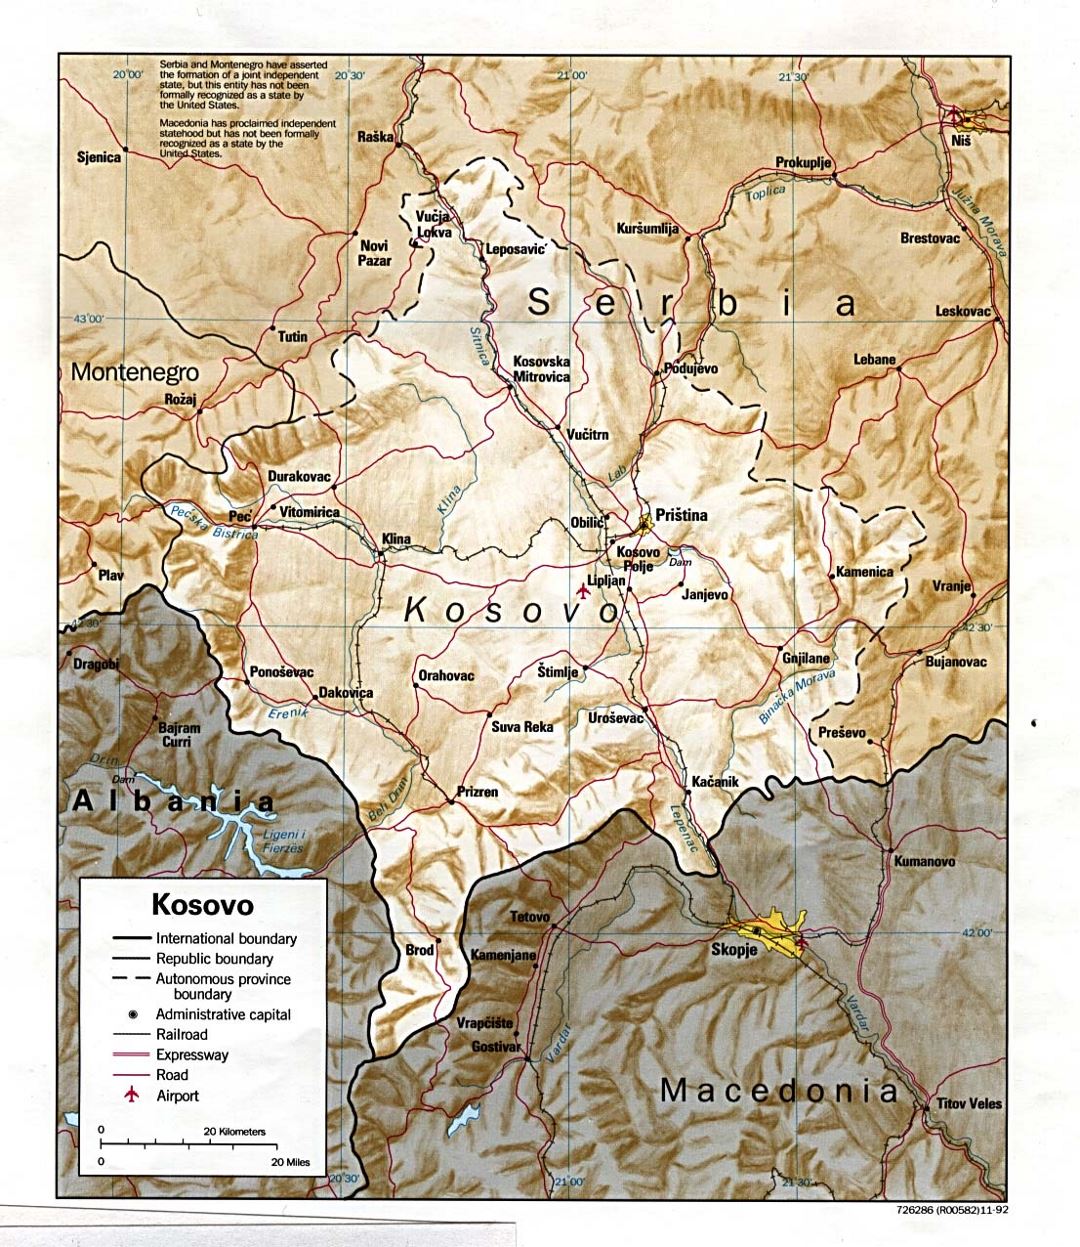 Mapa político detallado de Kosovo con relieve, carreteras, ferrocarriles, ciudades y aeropuertos - 1992